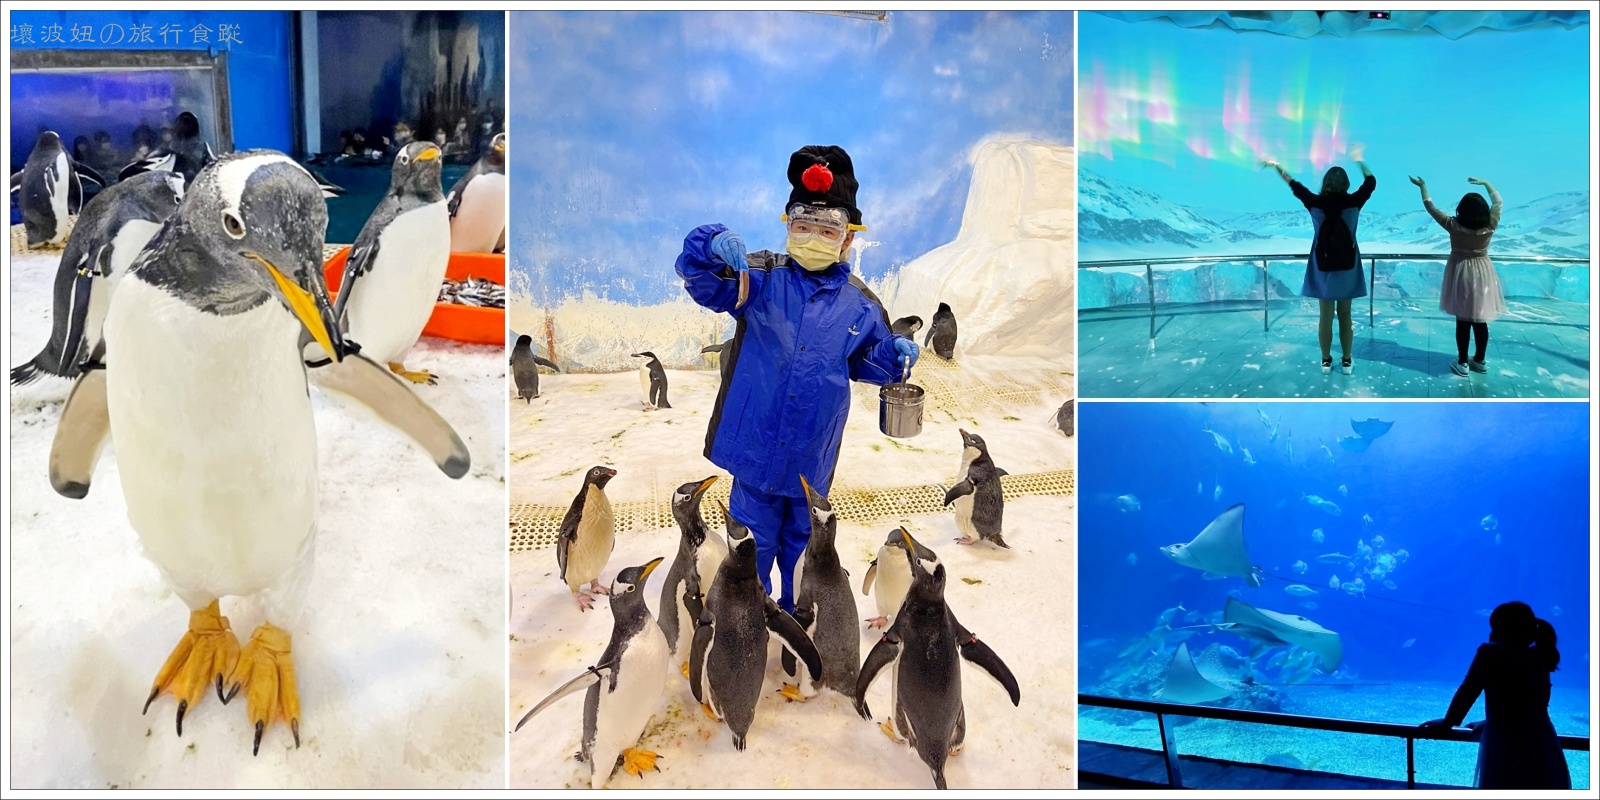 【屏東親子景點】我與企鵝的0.1毫米｜企鵝飼育照護體驗 - 絕對秒殺的屏東海生館餵企鵝體驗 - 屏東海生館 營業時間 - 壞波妞の旅行食踨